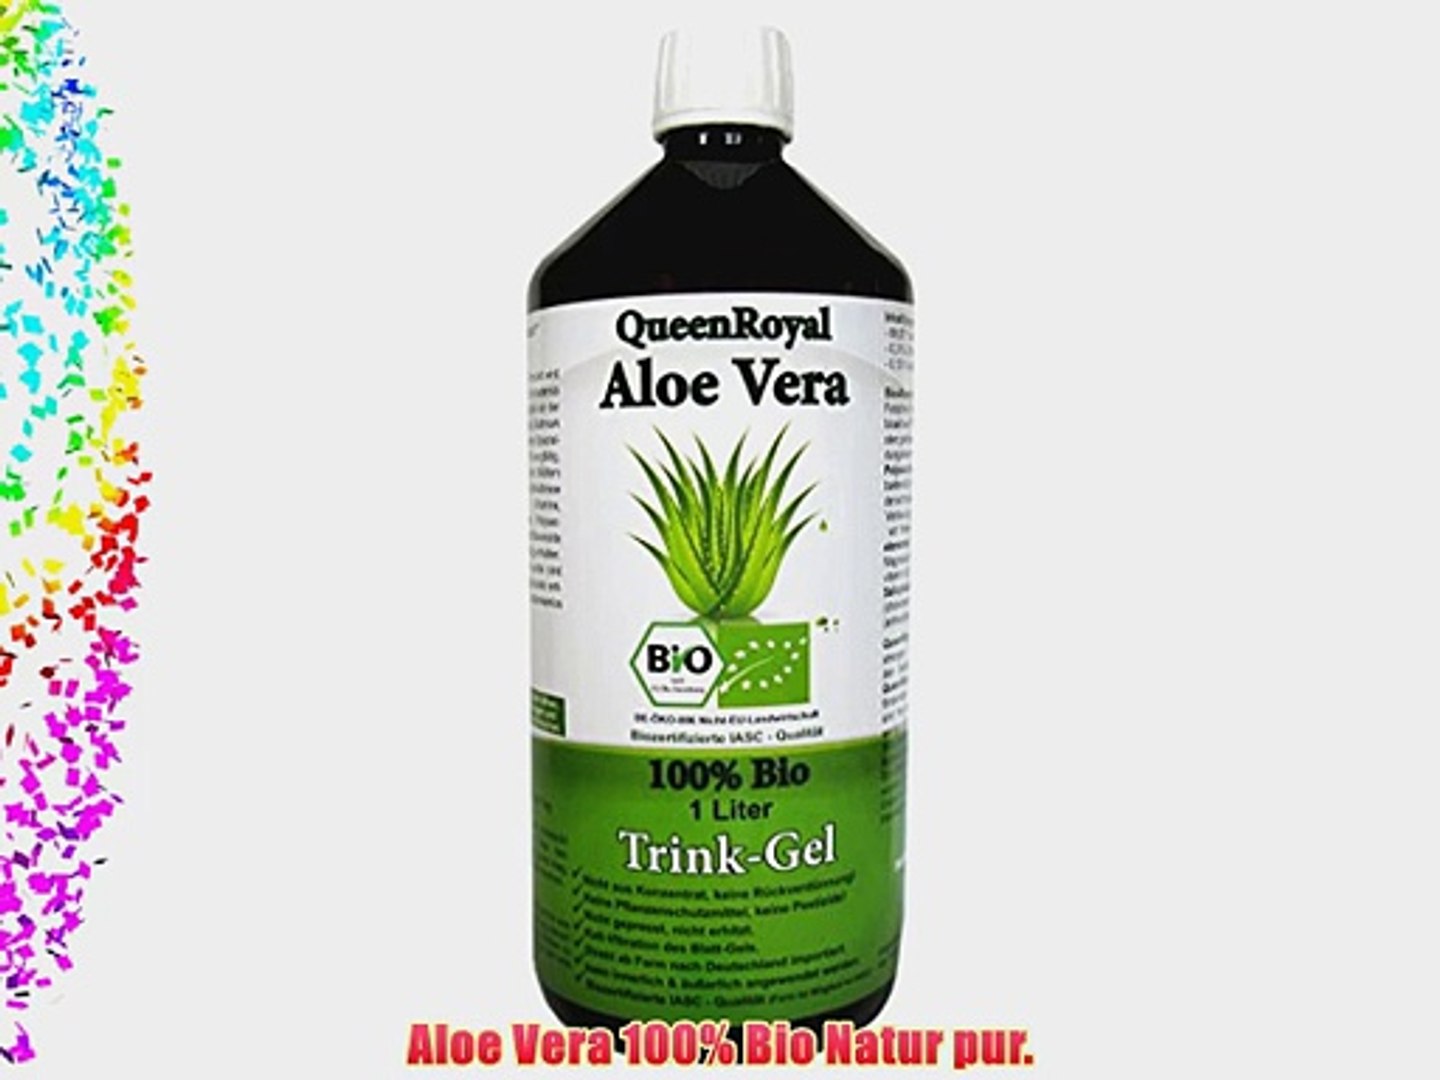 Queen Royal Aloe Vera Trink Gel 100% Bio Natur pur (1 Liter Flasche) -  video Dailymotion